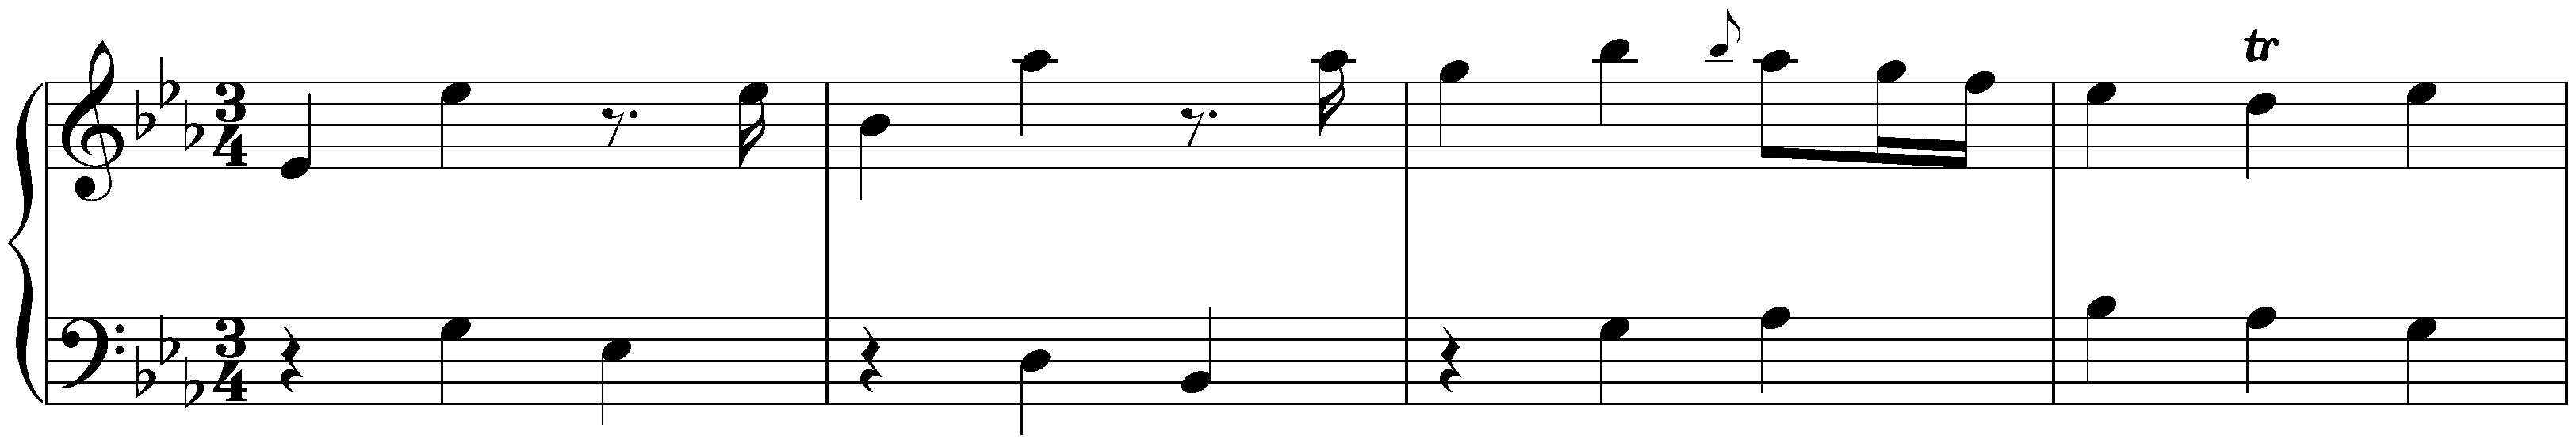 Sonata in E-flat major, Hob. XVI:Es3; 2. Menuetto – Trio